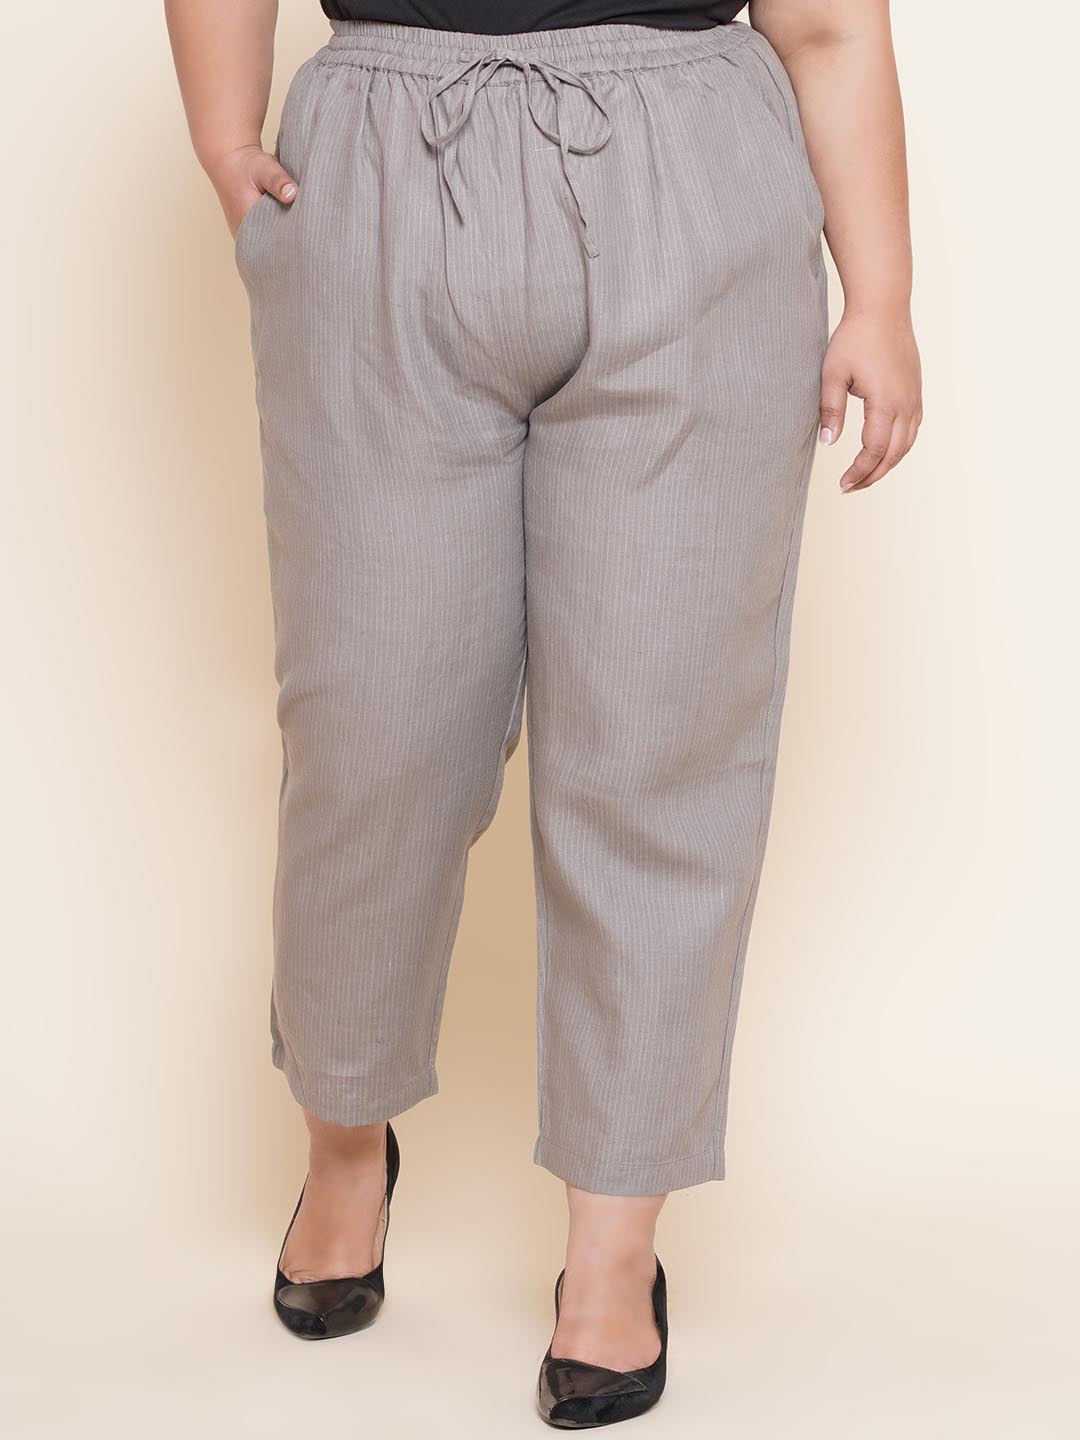 bottomwear_kiaahvi/trousers/KITR5017/kitr5017-1.jpg